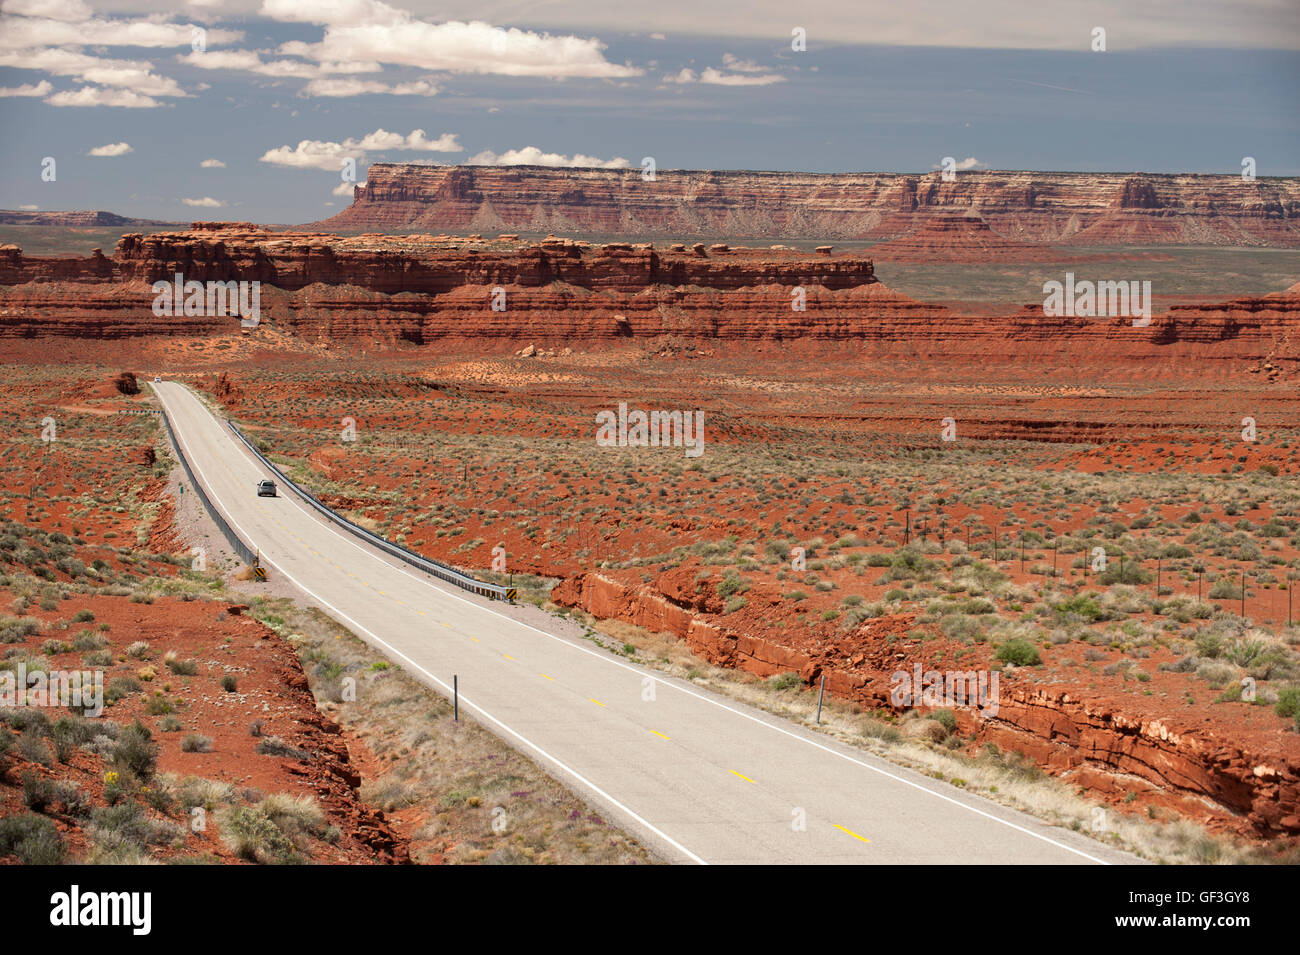 La strada aperta, West Americano versione. US Hwy 163 nel sud dello Utah come passa la Valley of the Gods (sul lato destro della foto). Foto Stock